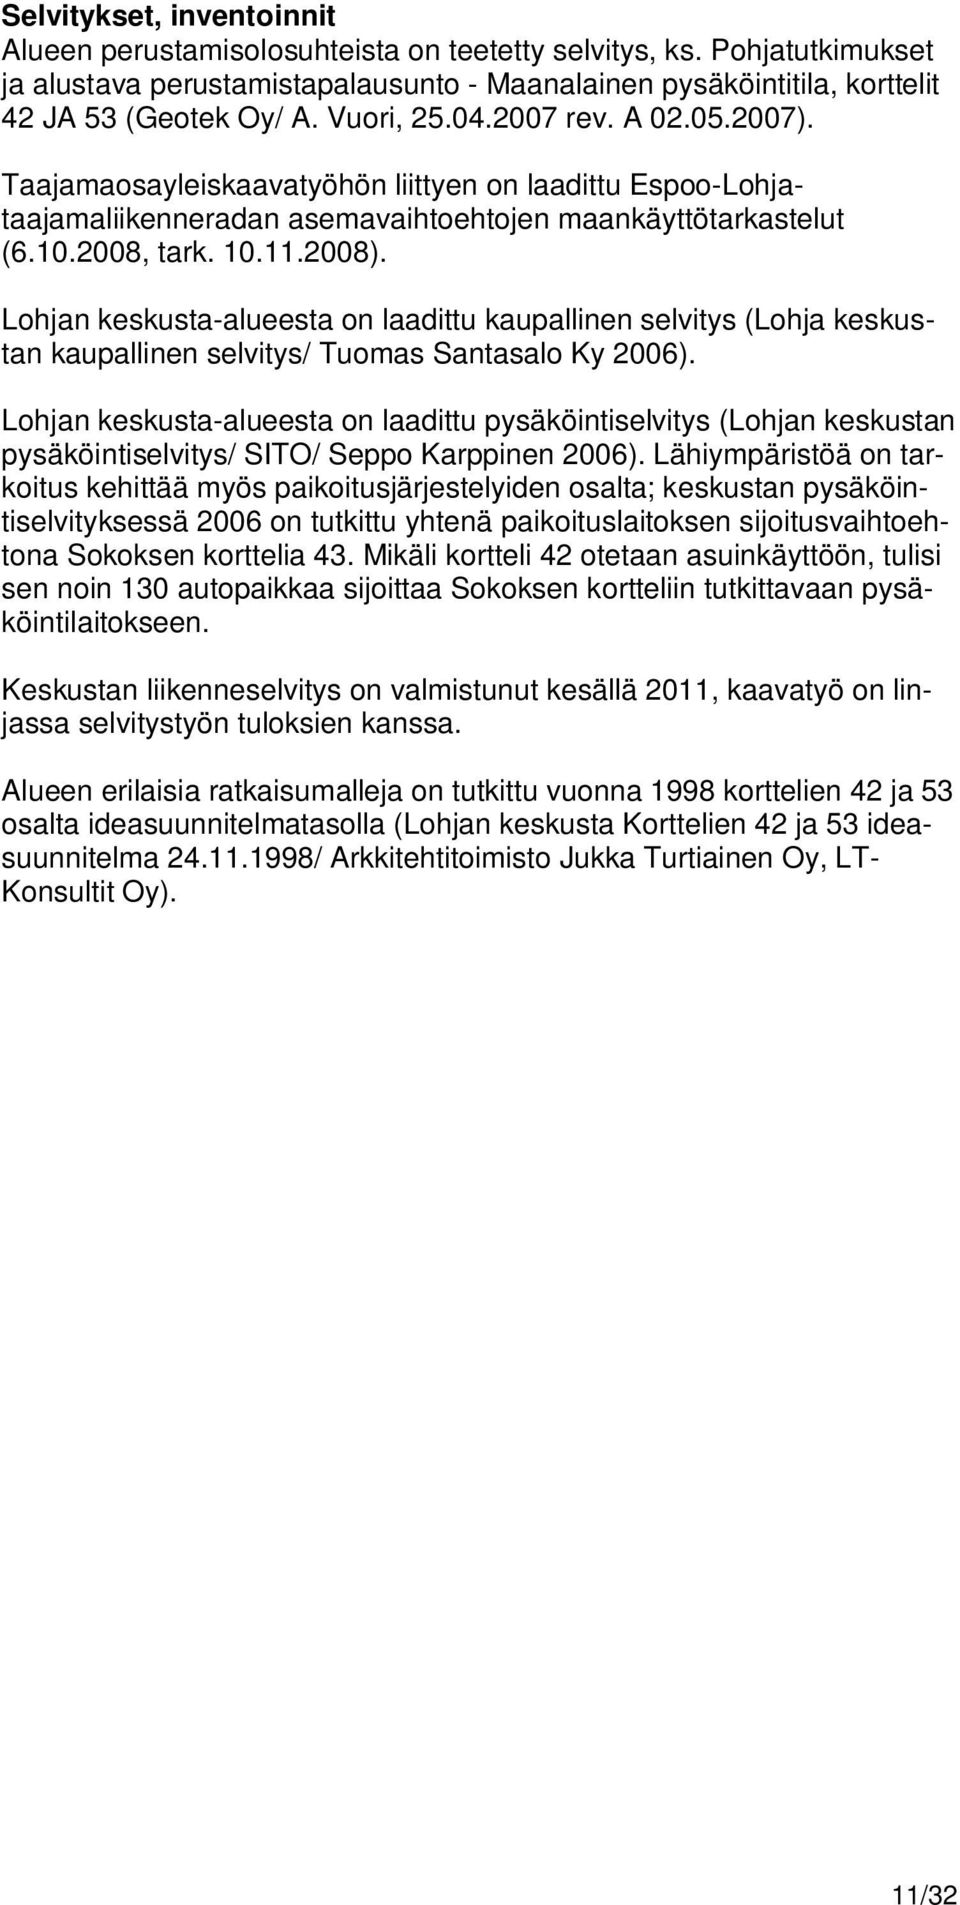 Lohjan keskusta-alueesta on laadittu kaupallinen selvitys (Lohja keskustan kaupallinen selvitys/ Tuomas Santasalo Ky 2006).